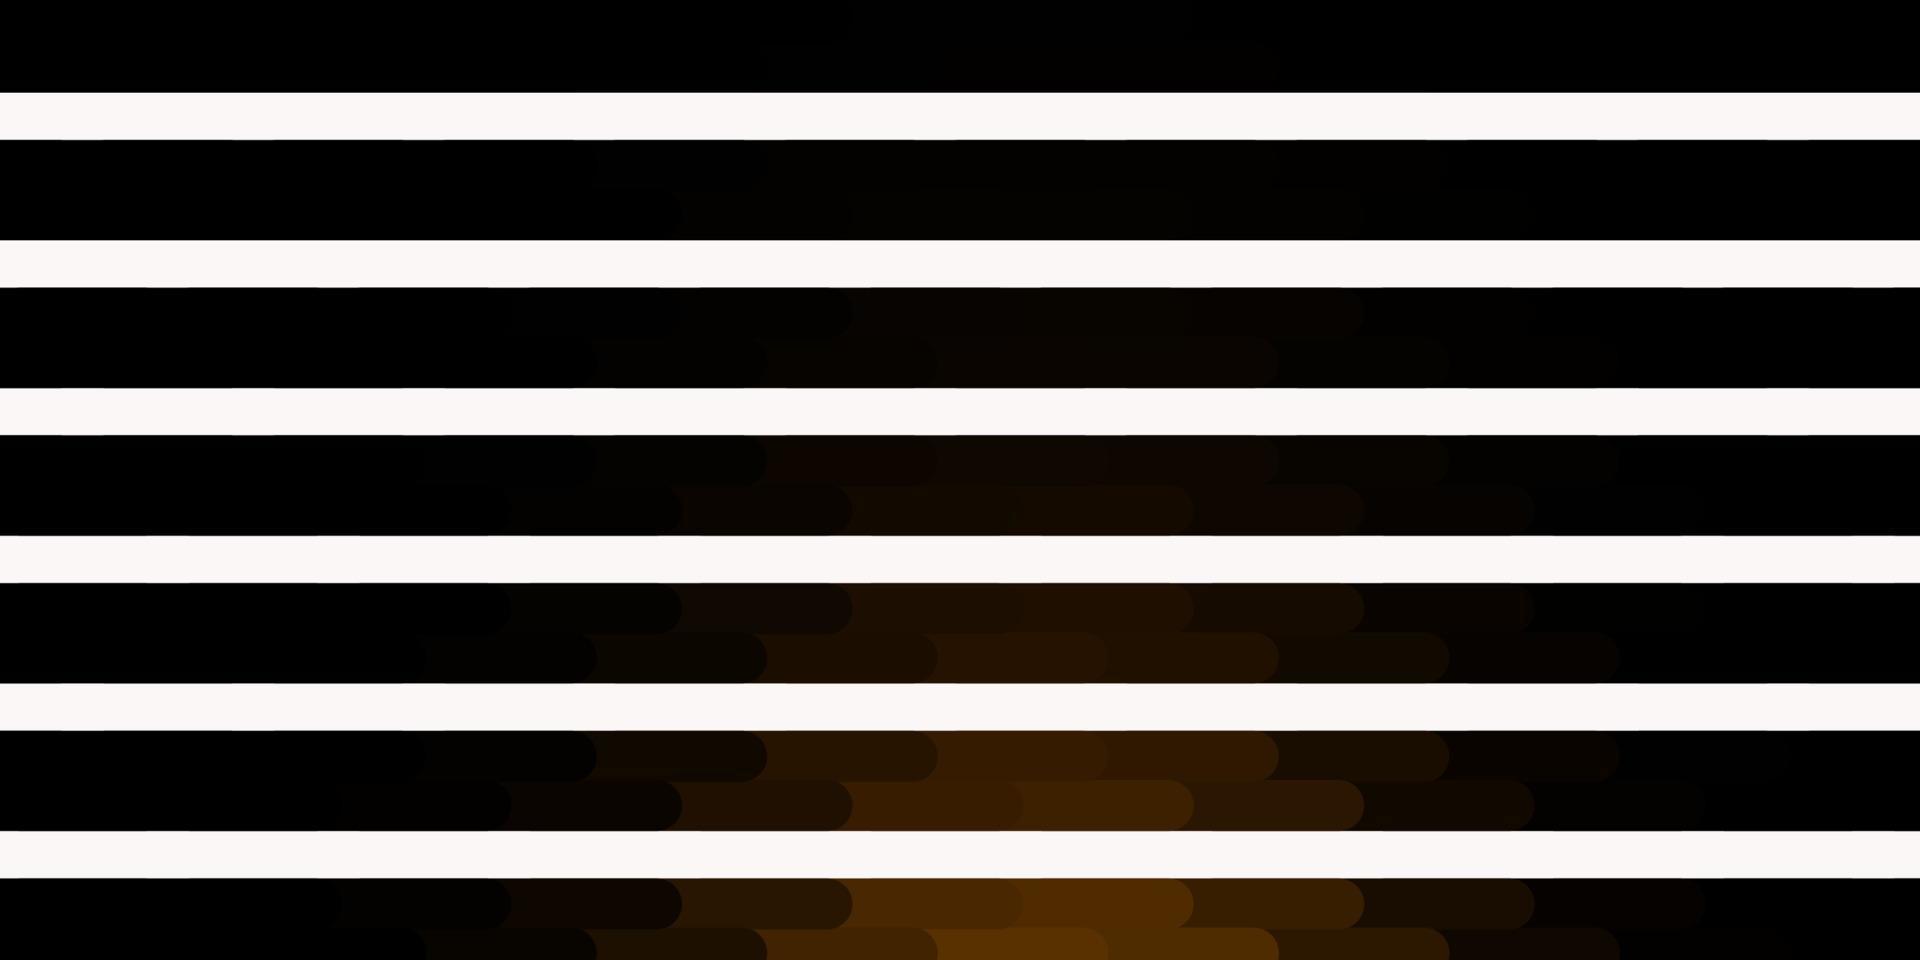 layout de vetor amarelo escuro com linhas.